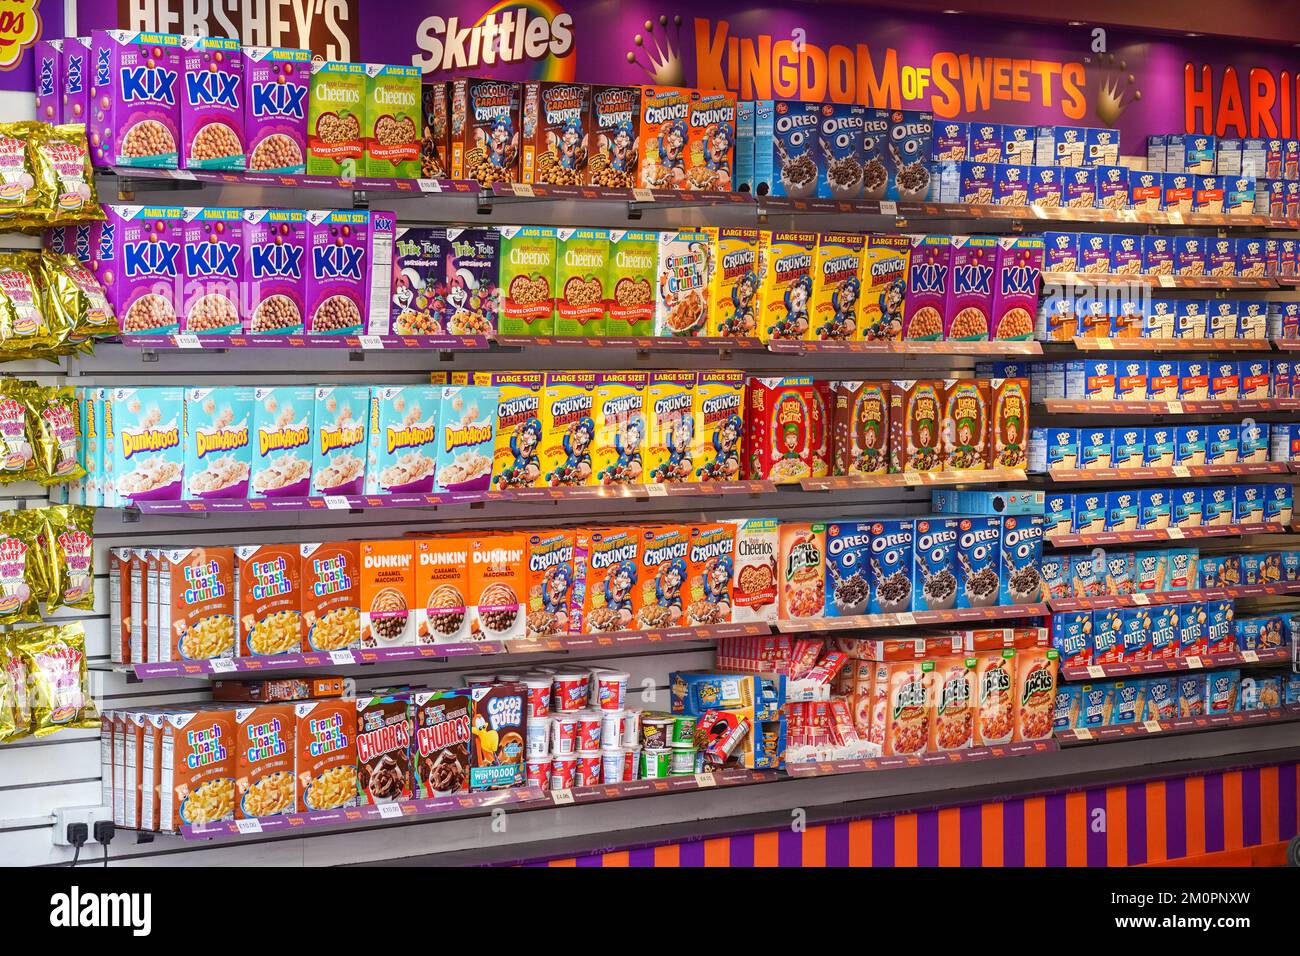 Kingdom of Sweets Shop avec bonbons et aliments sucrés, Londres, Angleterre Royaume-Uni Banque D'Images